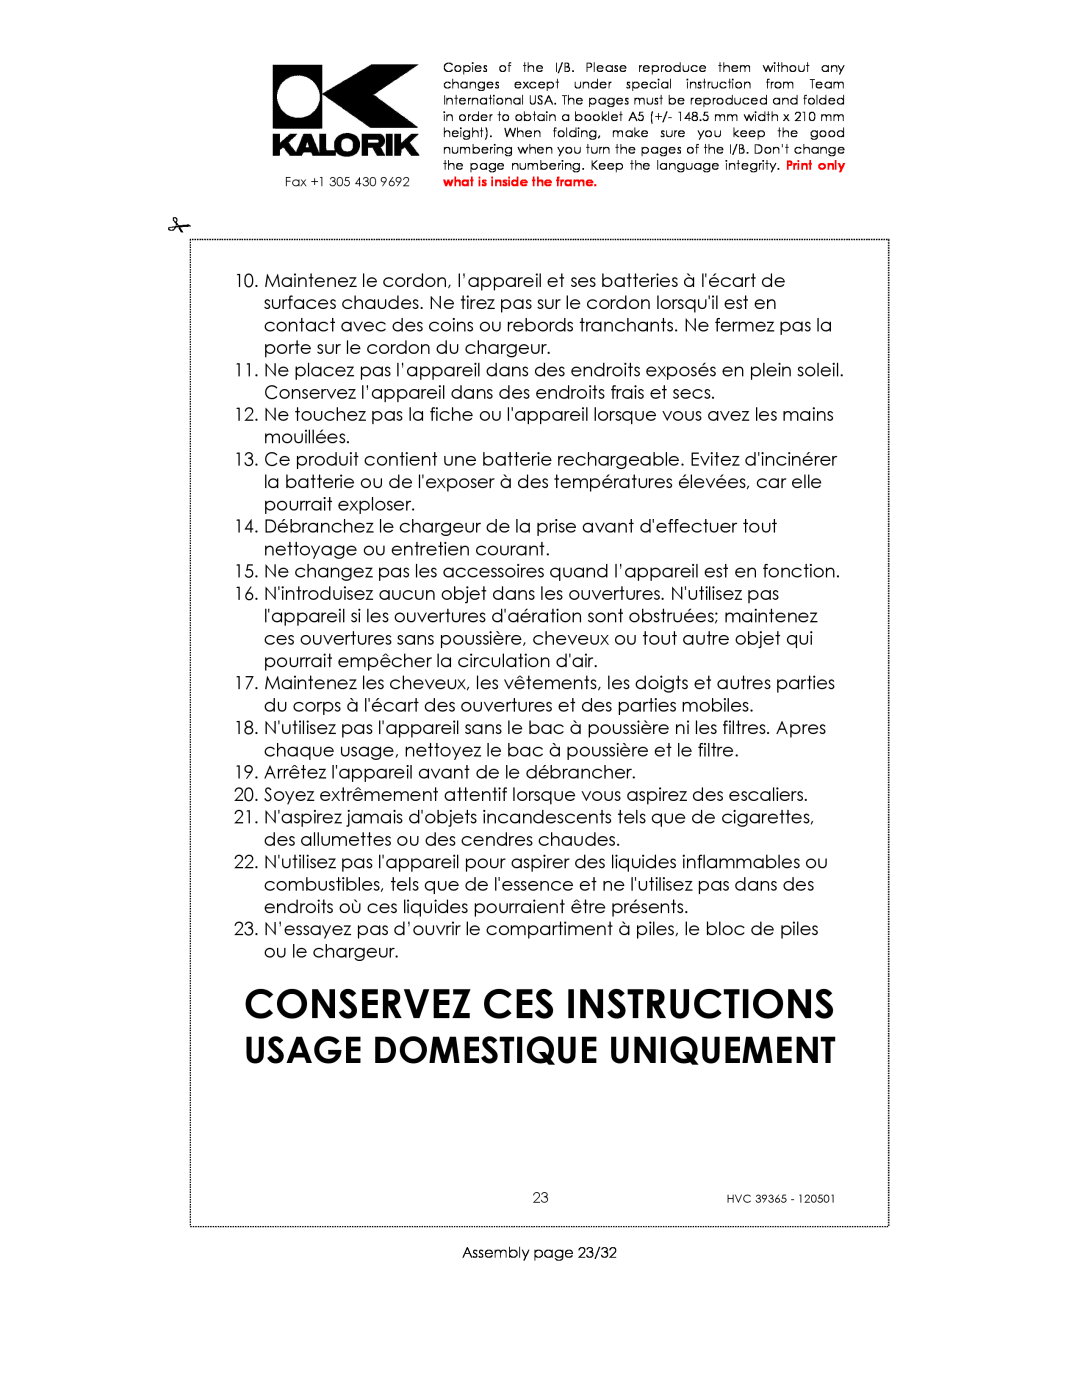 Kalorik HVC 39365 manual Conservez Ces Instructions, Usage Domestique Uniquement 